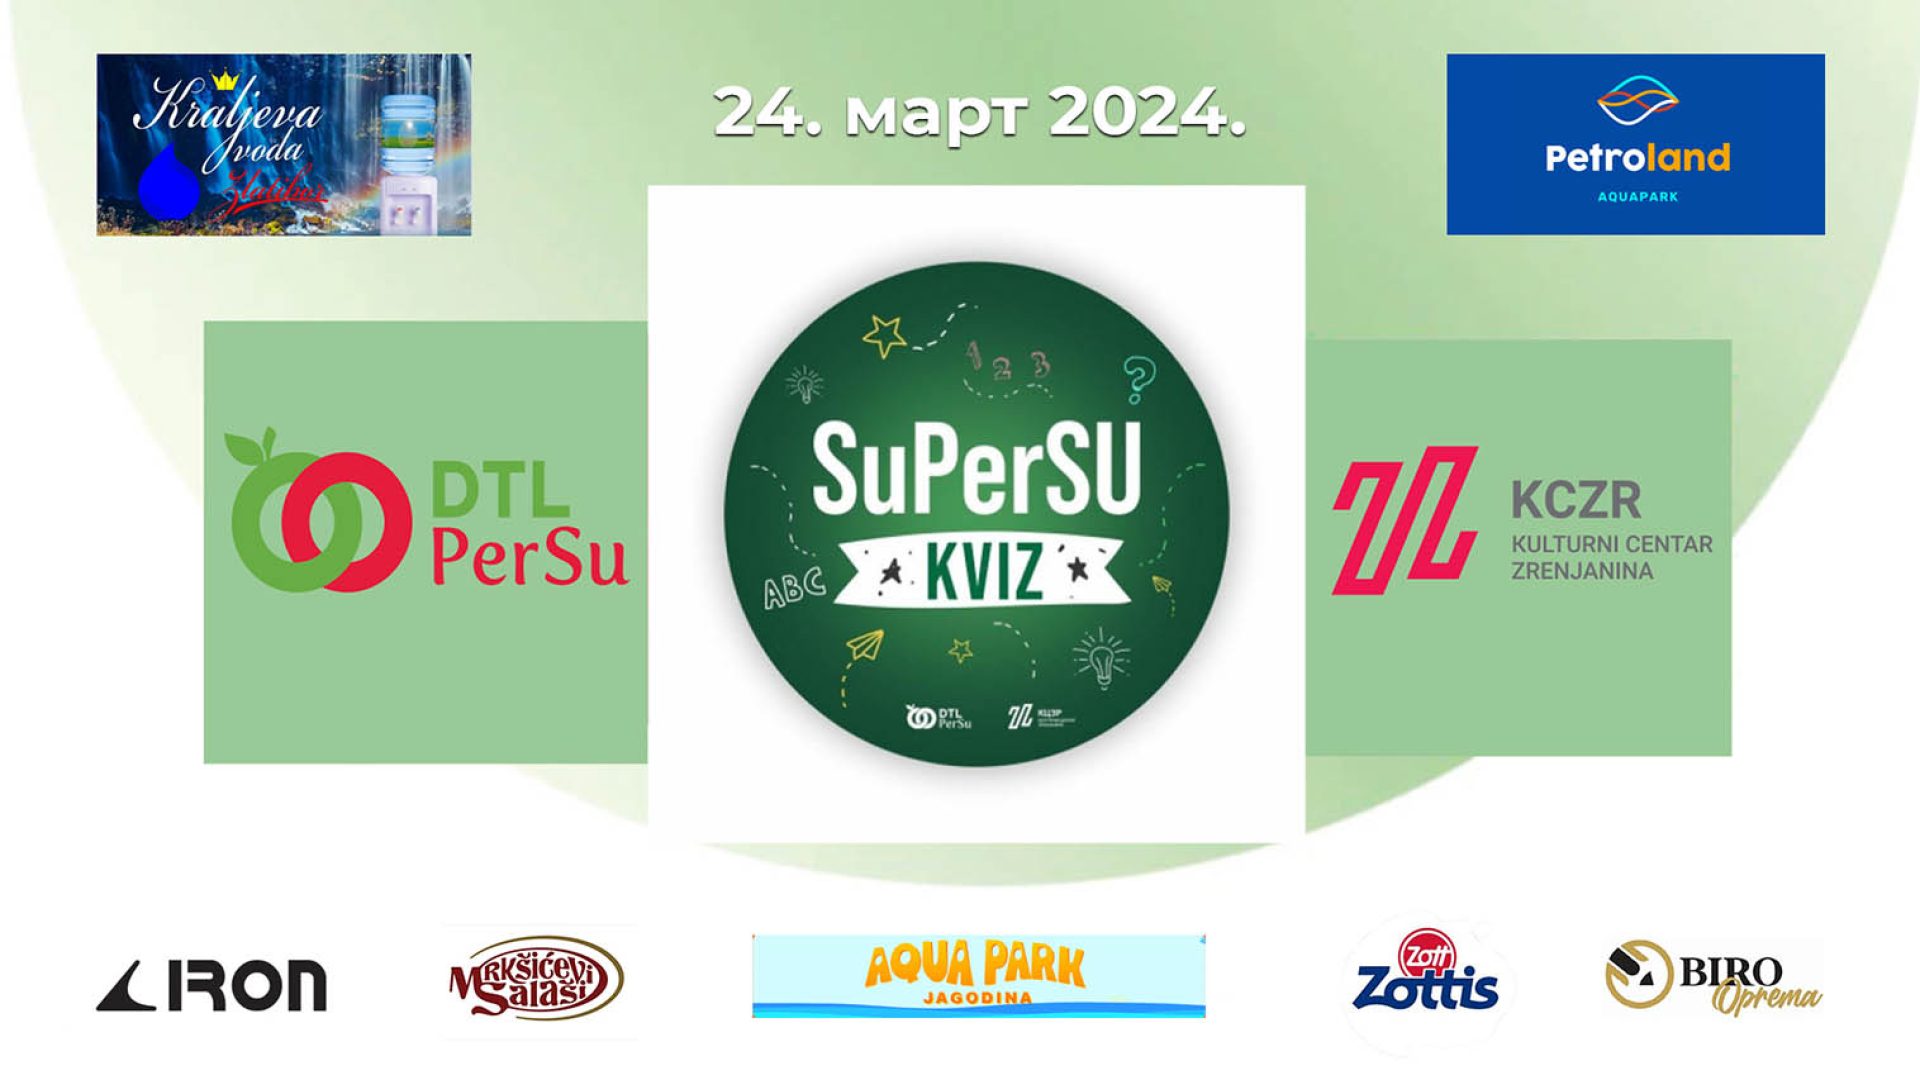 24. marta održava se SuperSu kviz